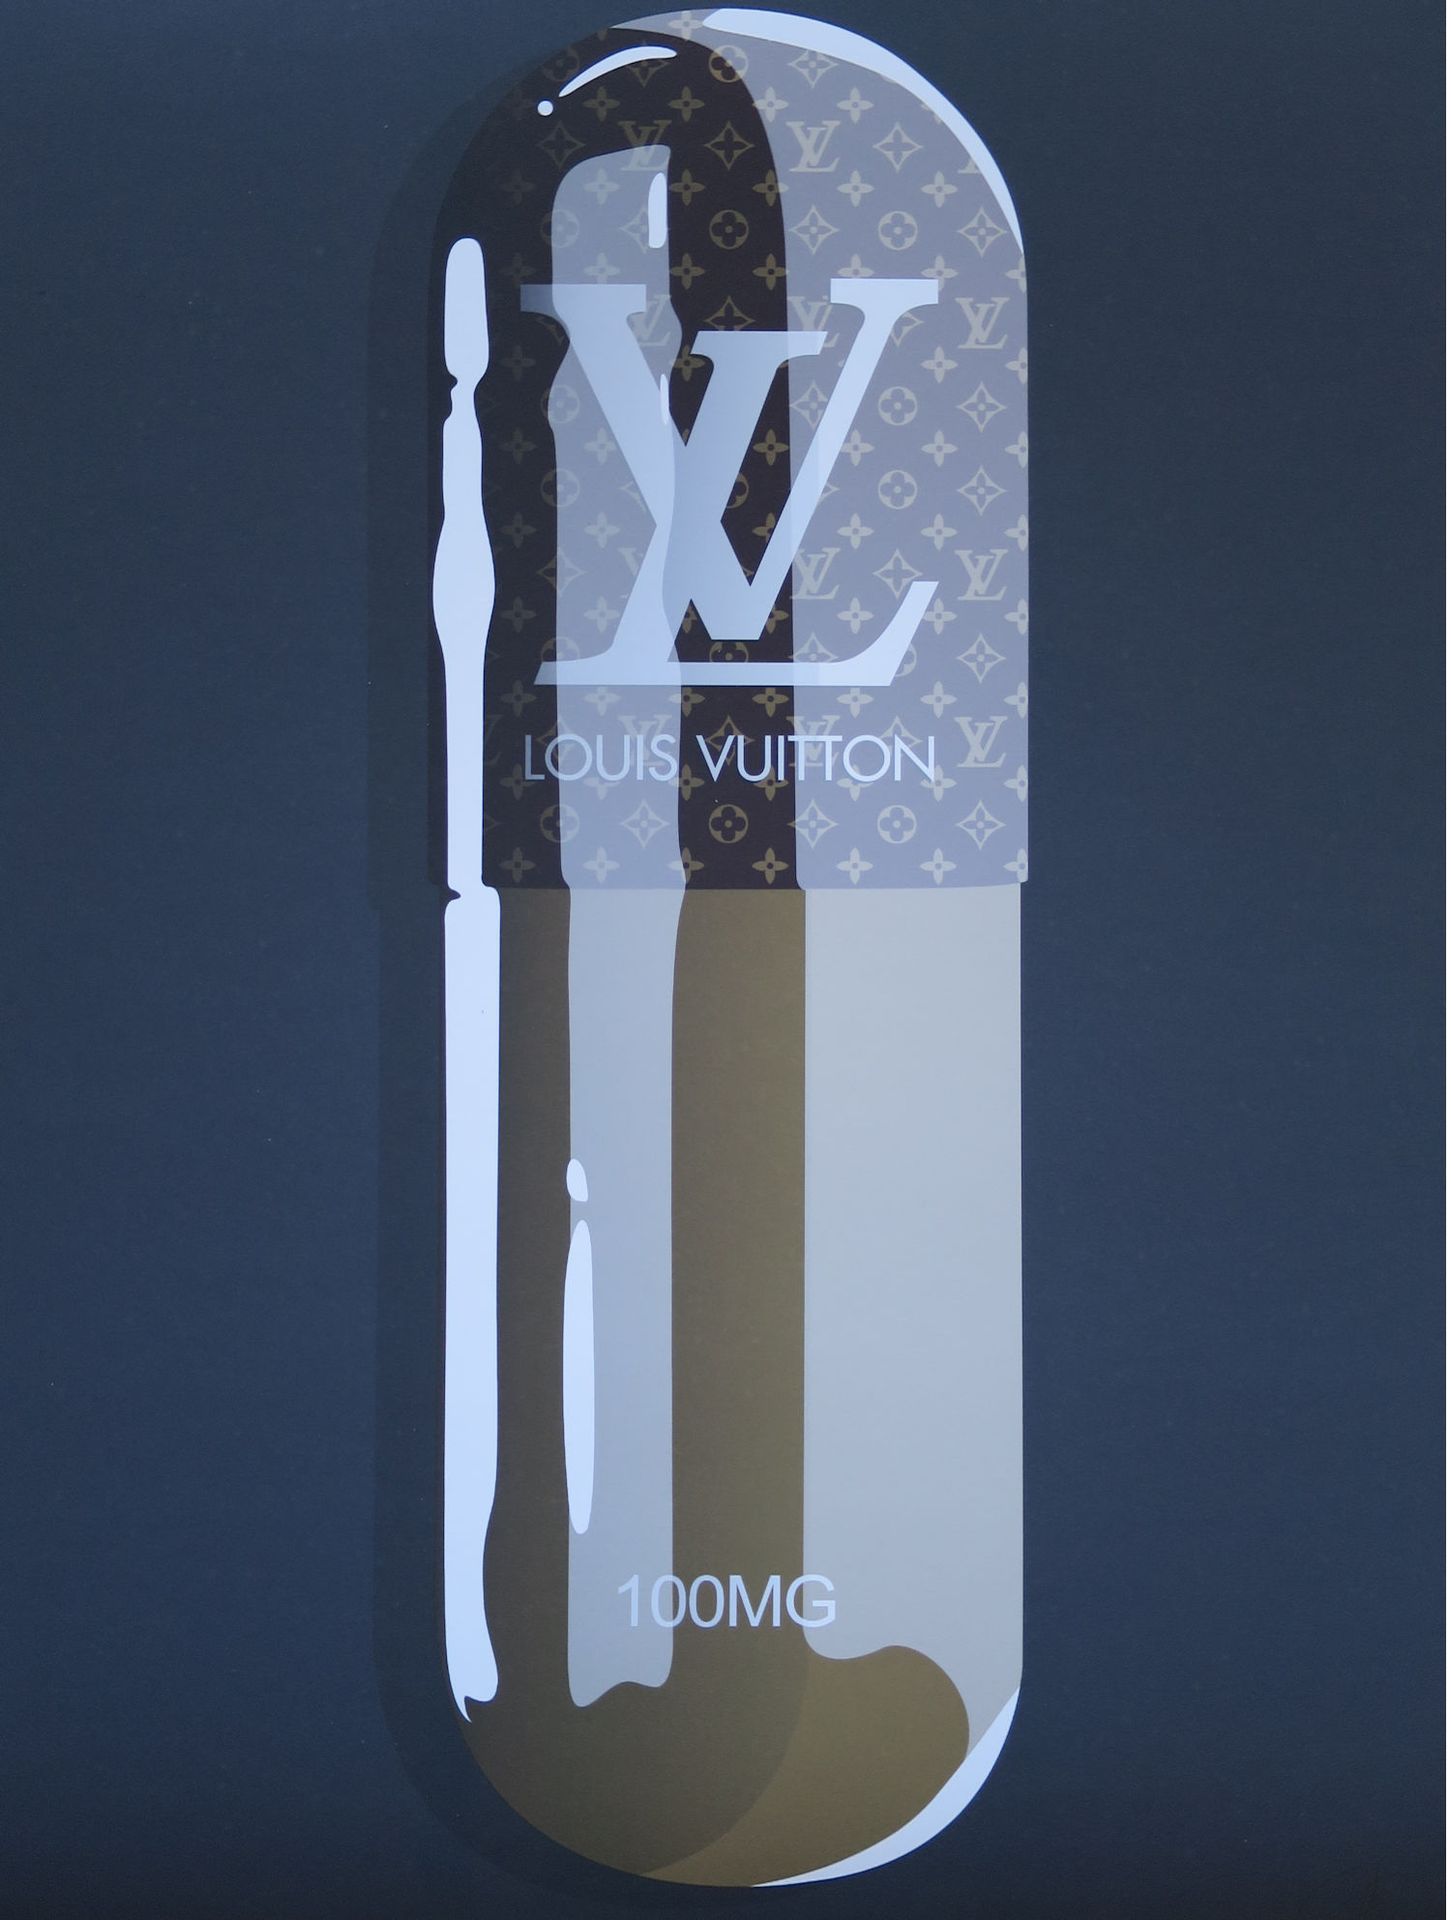 DENIAL DENIAL

Louis Vuitton, 2019

Lithographie signée et numérotée /100 exempl&hellip;